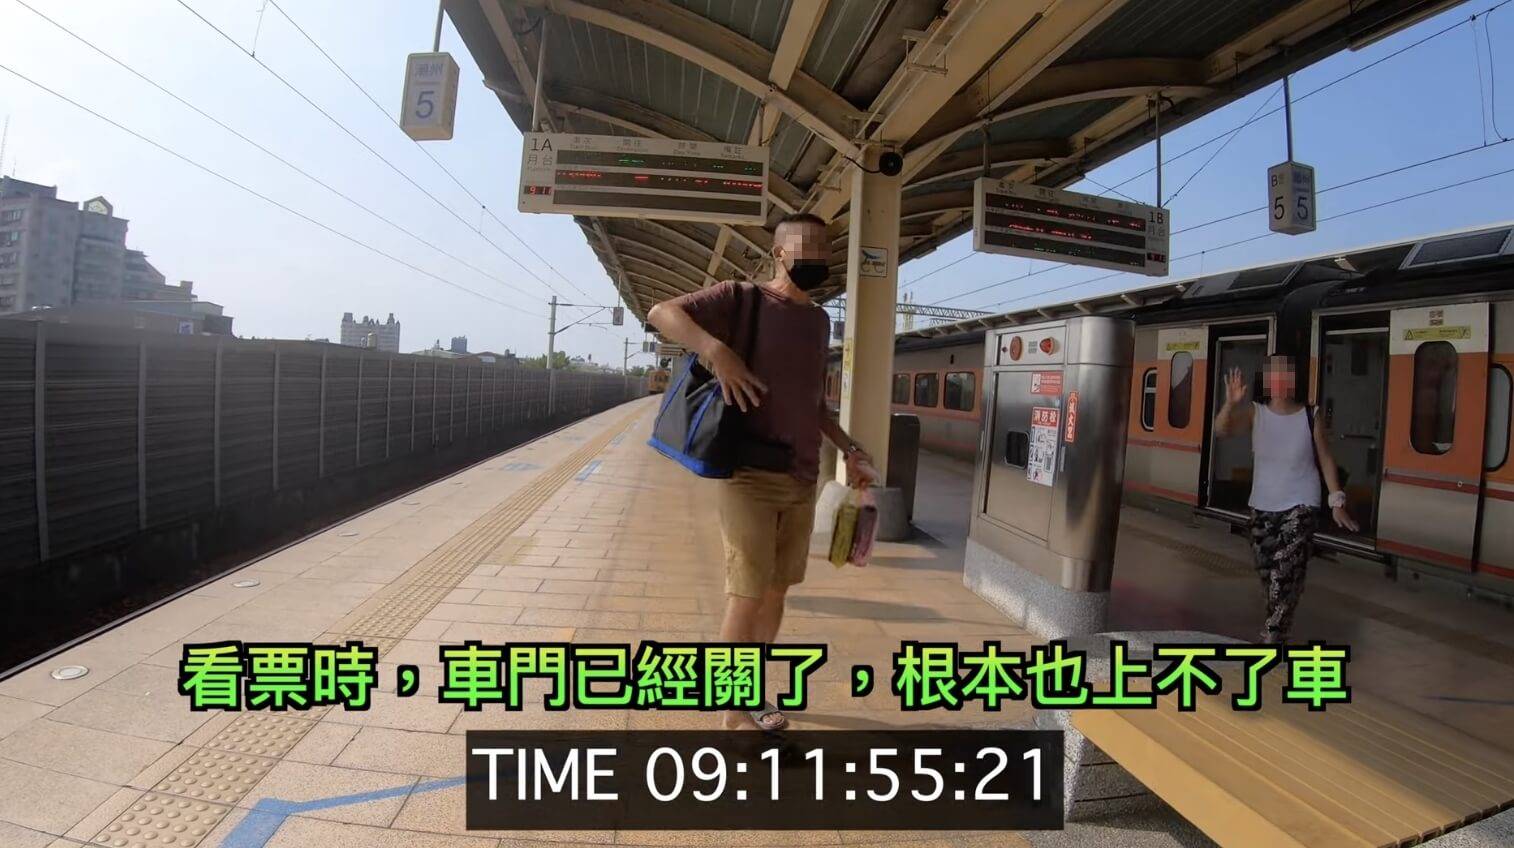 日前出現一對夫妻因為沒趕上火車，竟然氣得跳腳，還反過來責怪站務人員沒有「以旅客為優先」，掀起熱議。